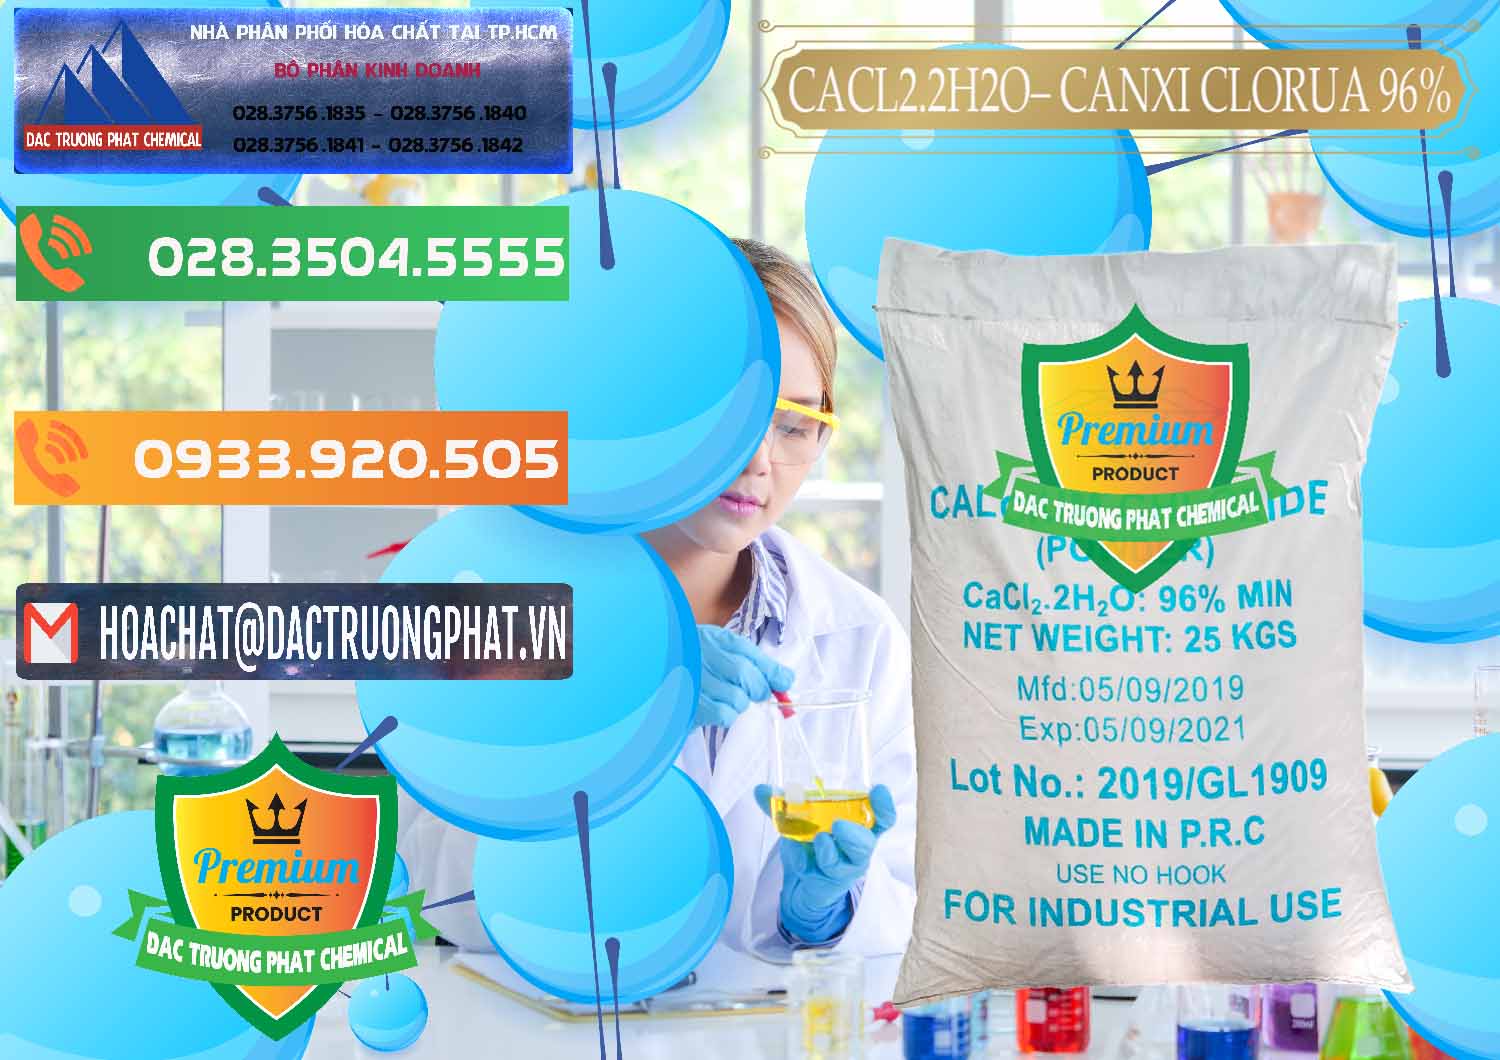 Công ty cung cấp và bán CaCl2 – Canxi Clorua 96% Logo Kim Cương Trung Quốc China - 0040 - Cty cung cấp - phân phối hóa chất tại TP.HCM - hoachatxulynuoc.com.vn